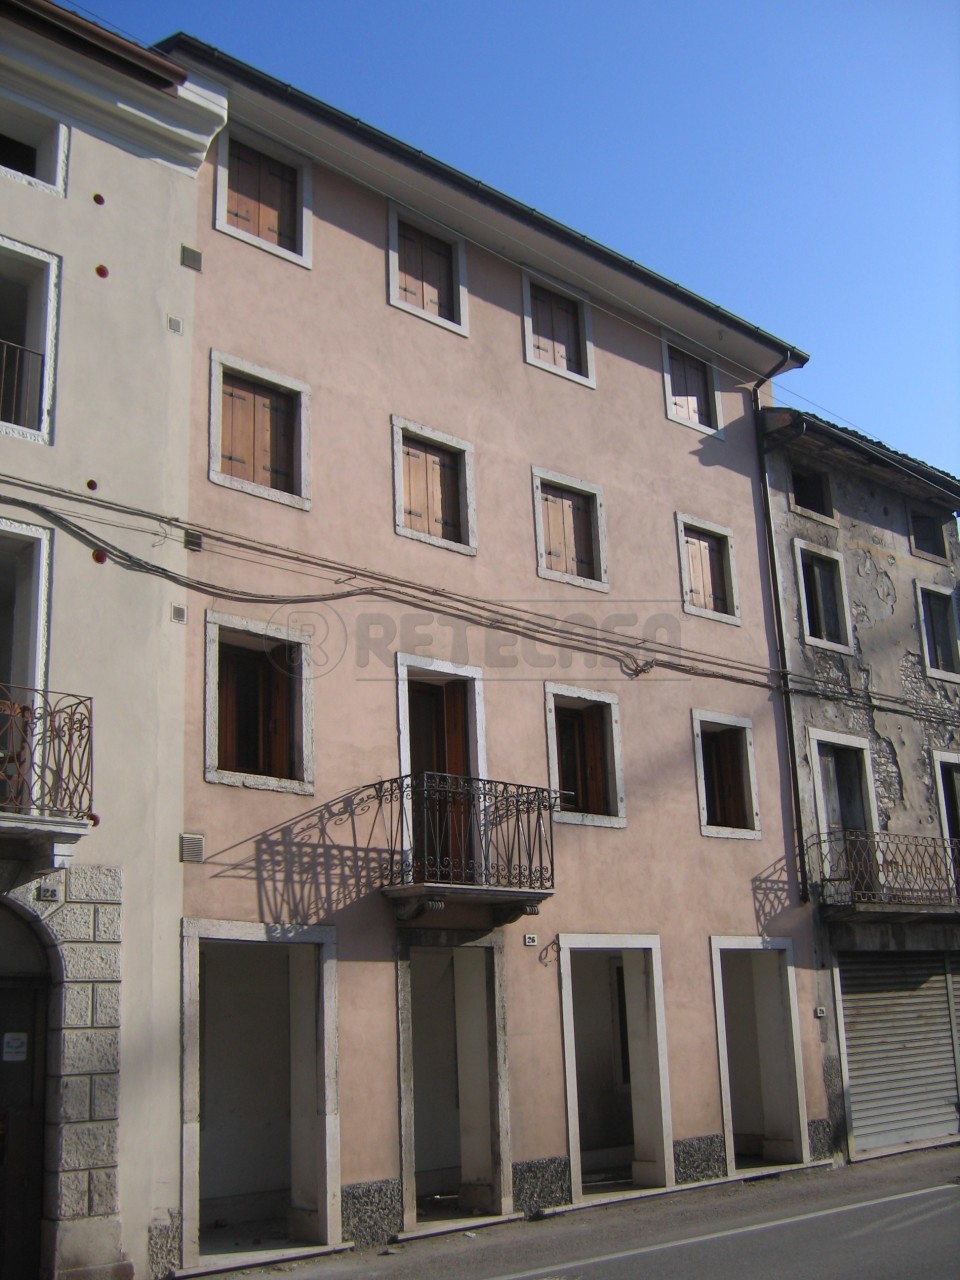 Ufficio / Studio in affitto a Valdagno, 9999 locali, prezzo € 350 | PortaleAgenzieImmobiliari.it